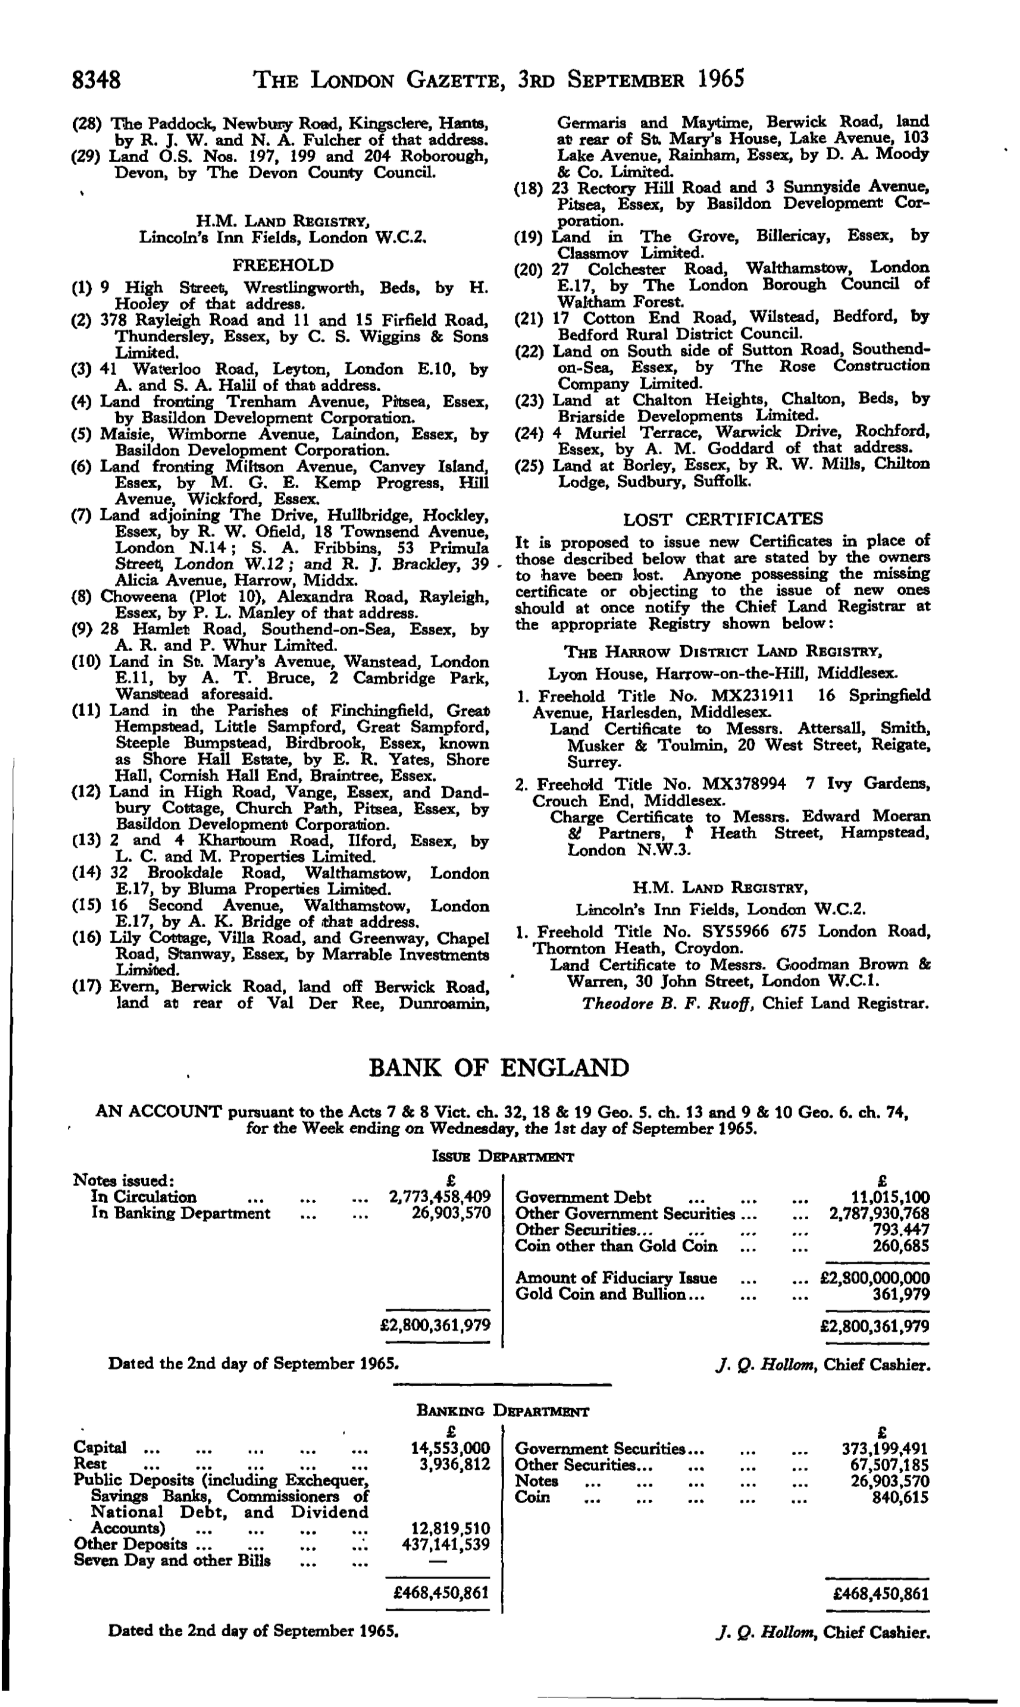 8348 the London Gazette, Srd September 1965 Bank of England